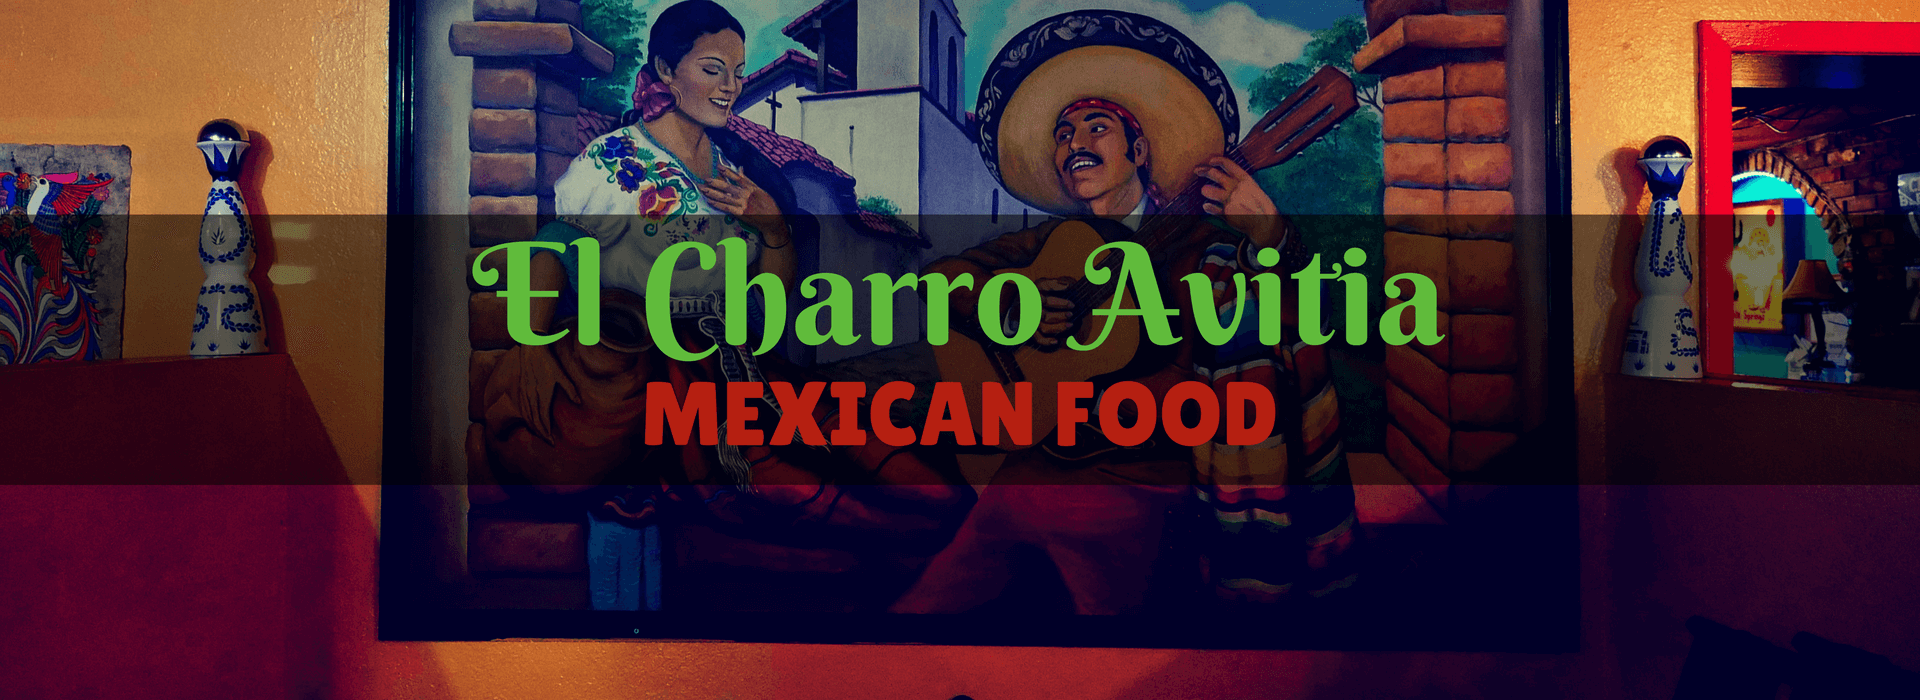 El Charro Avitia Mexican Restaurant